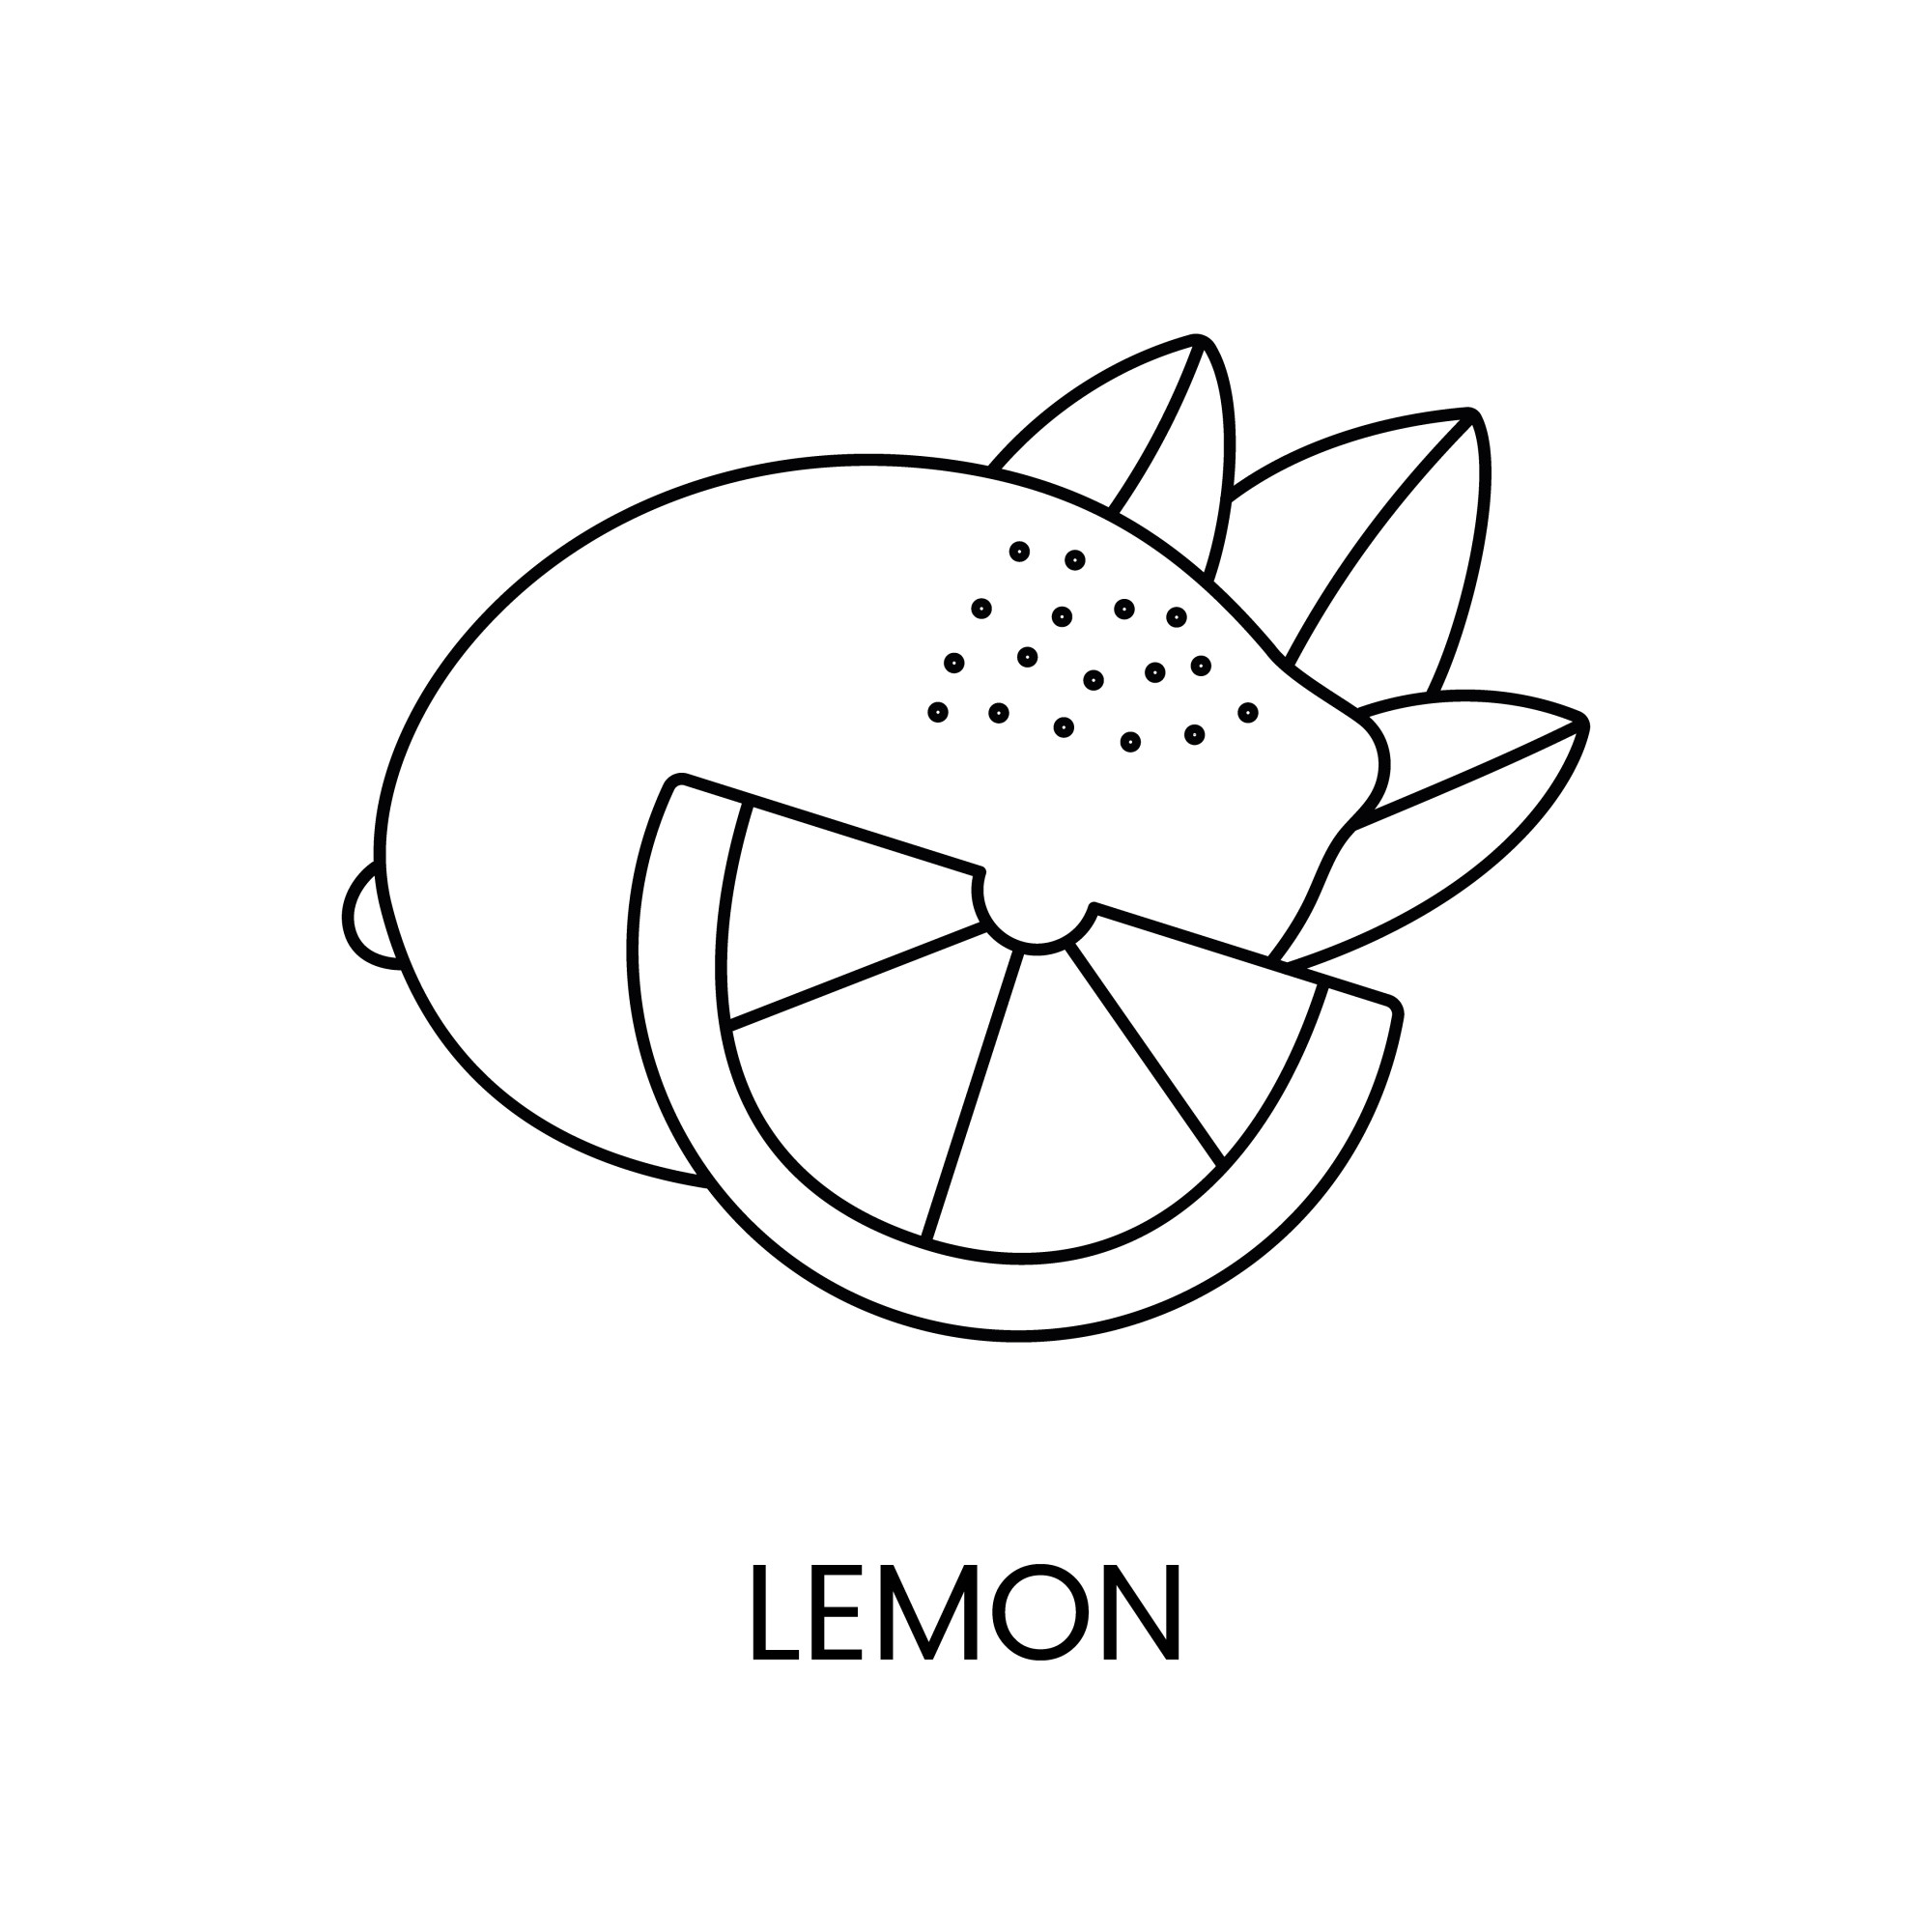 Раскраска для детей: лимон с долькой